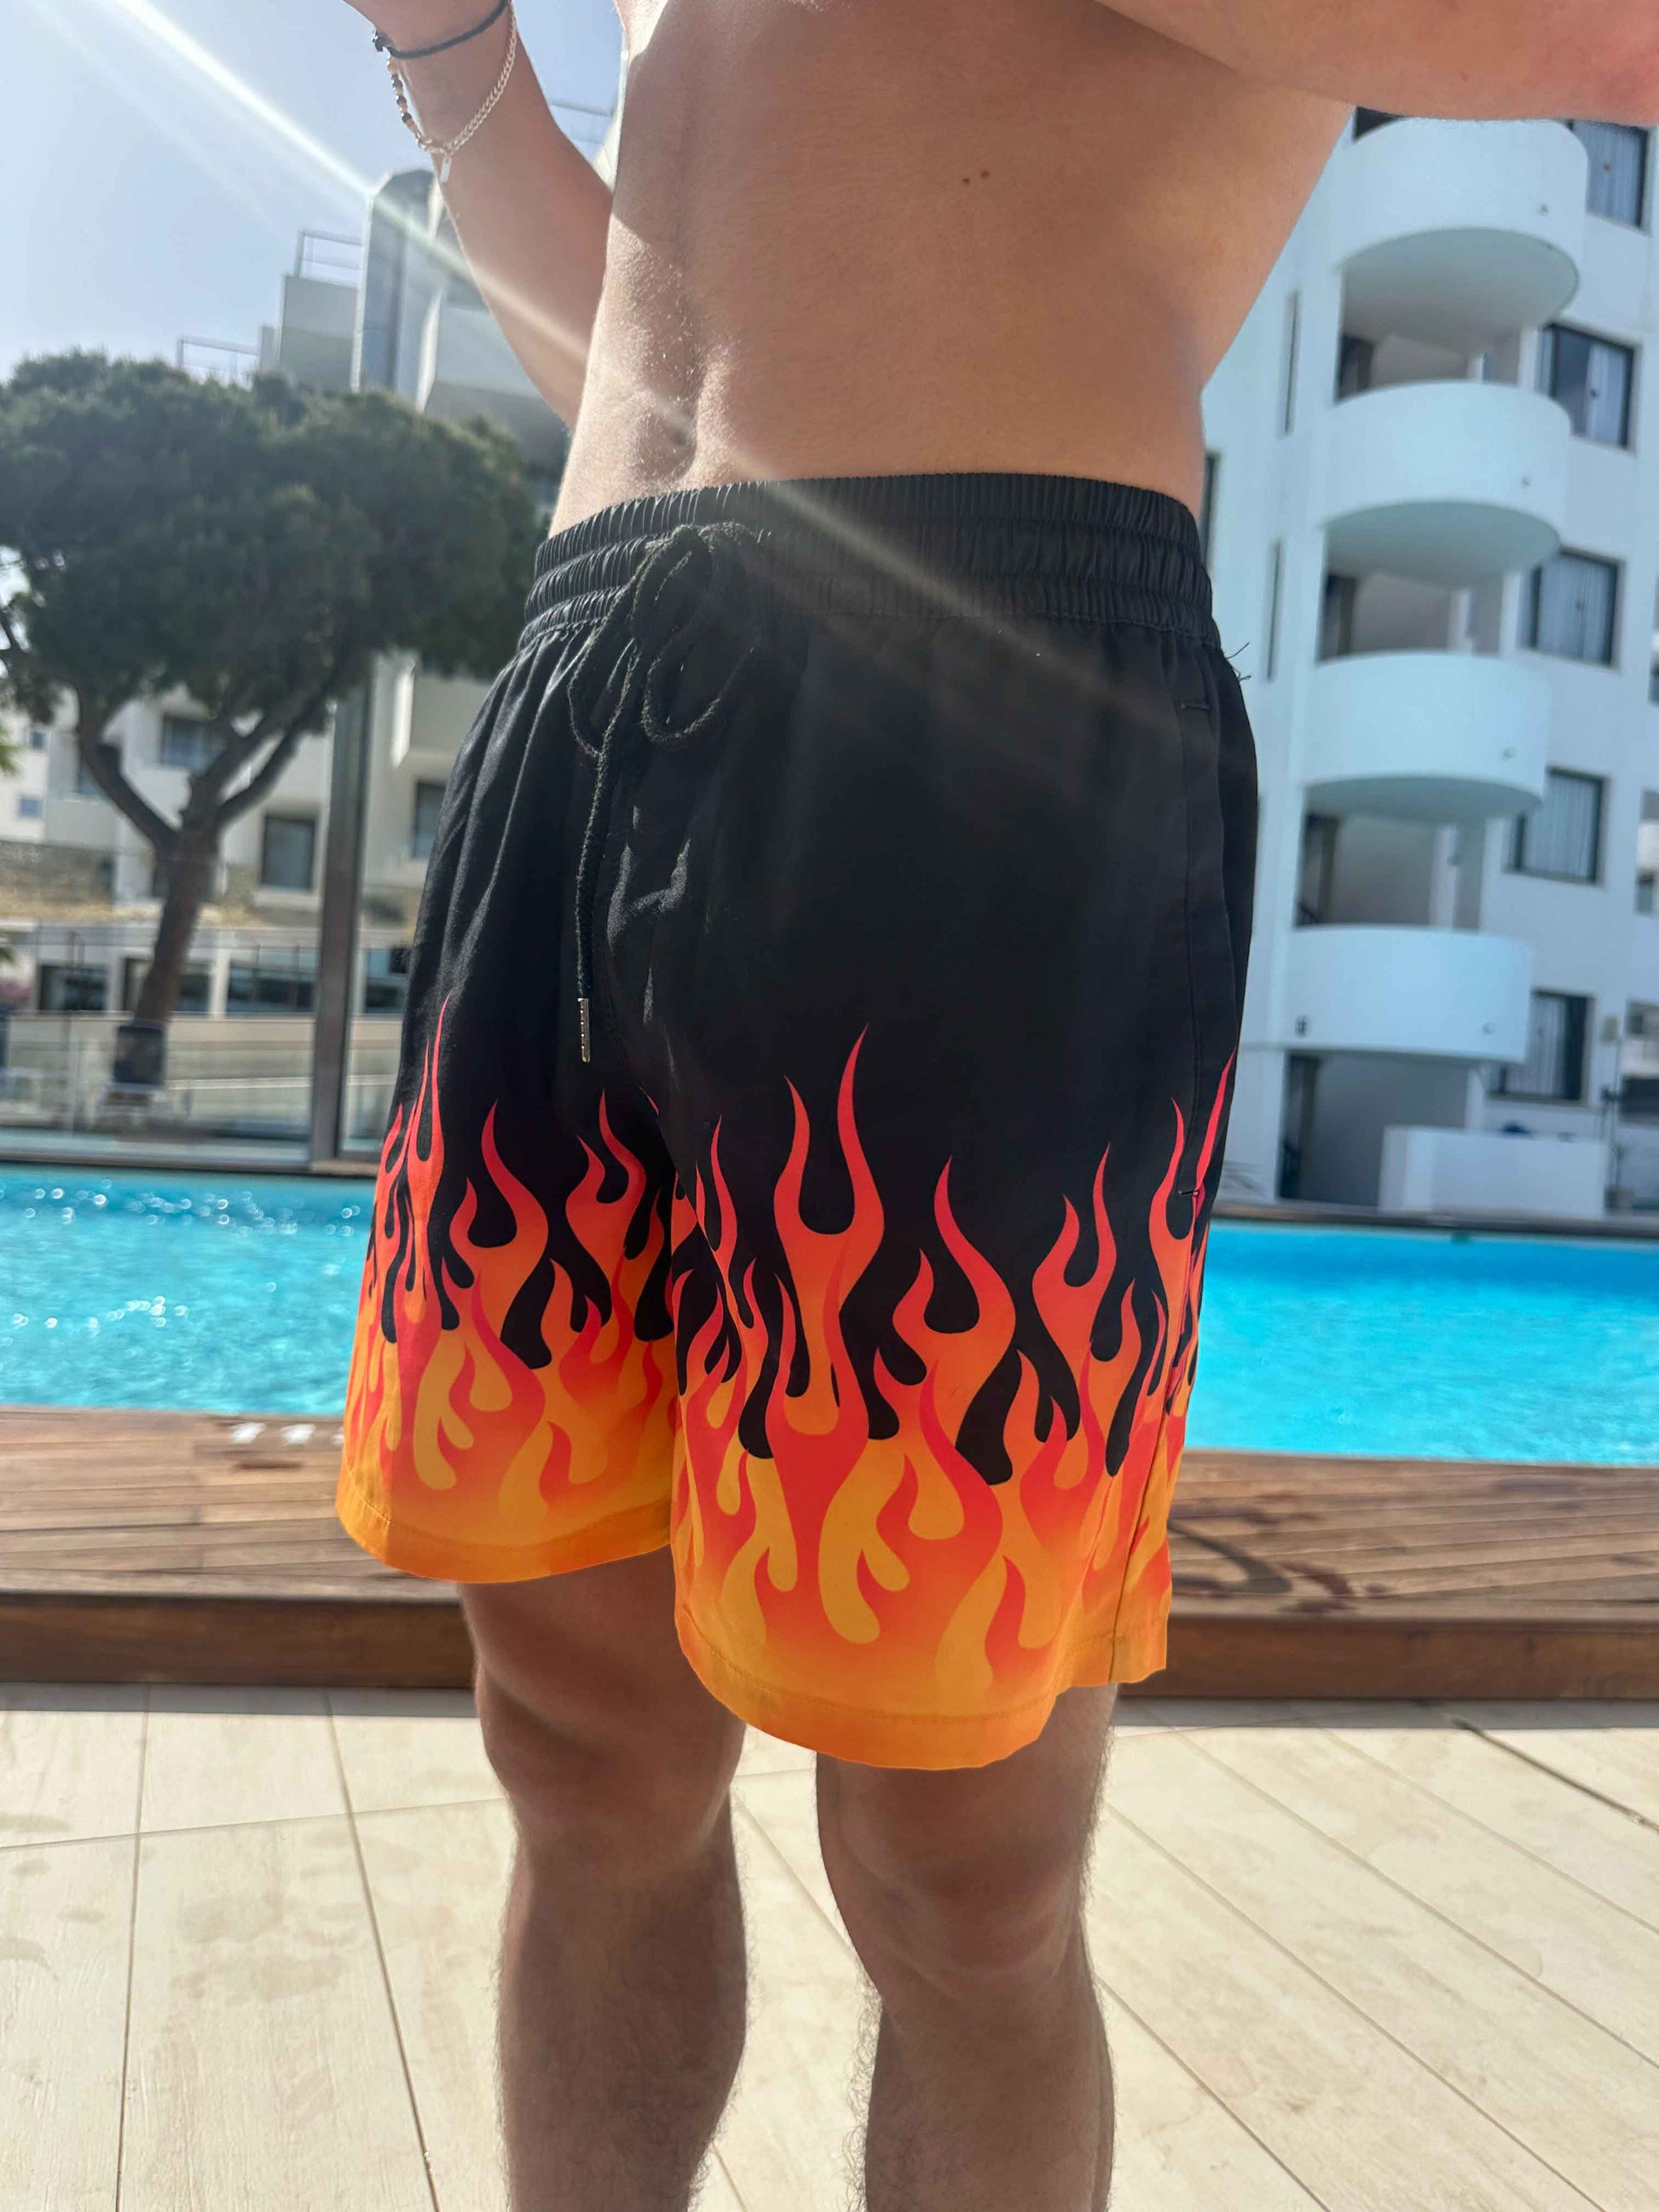 Hot Rod Flames / Fire Print Swim Trunks - Alex Mac Design